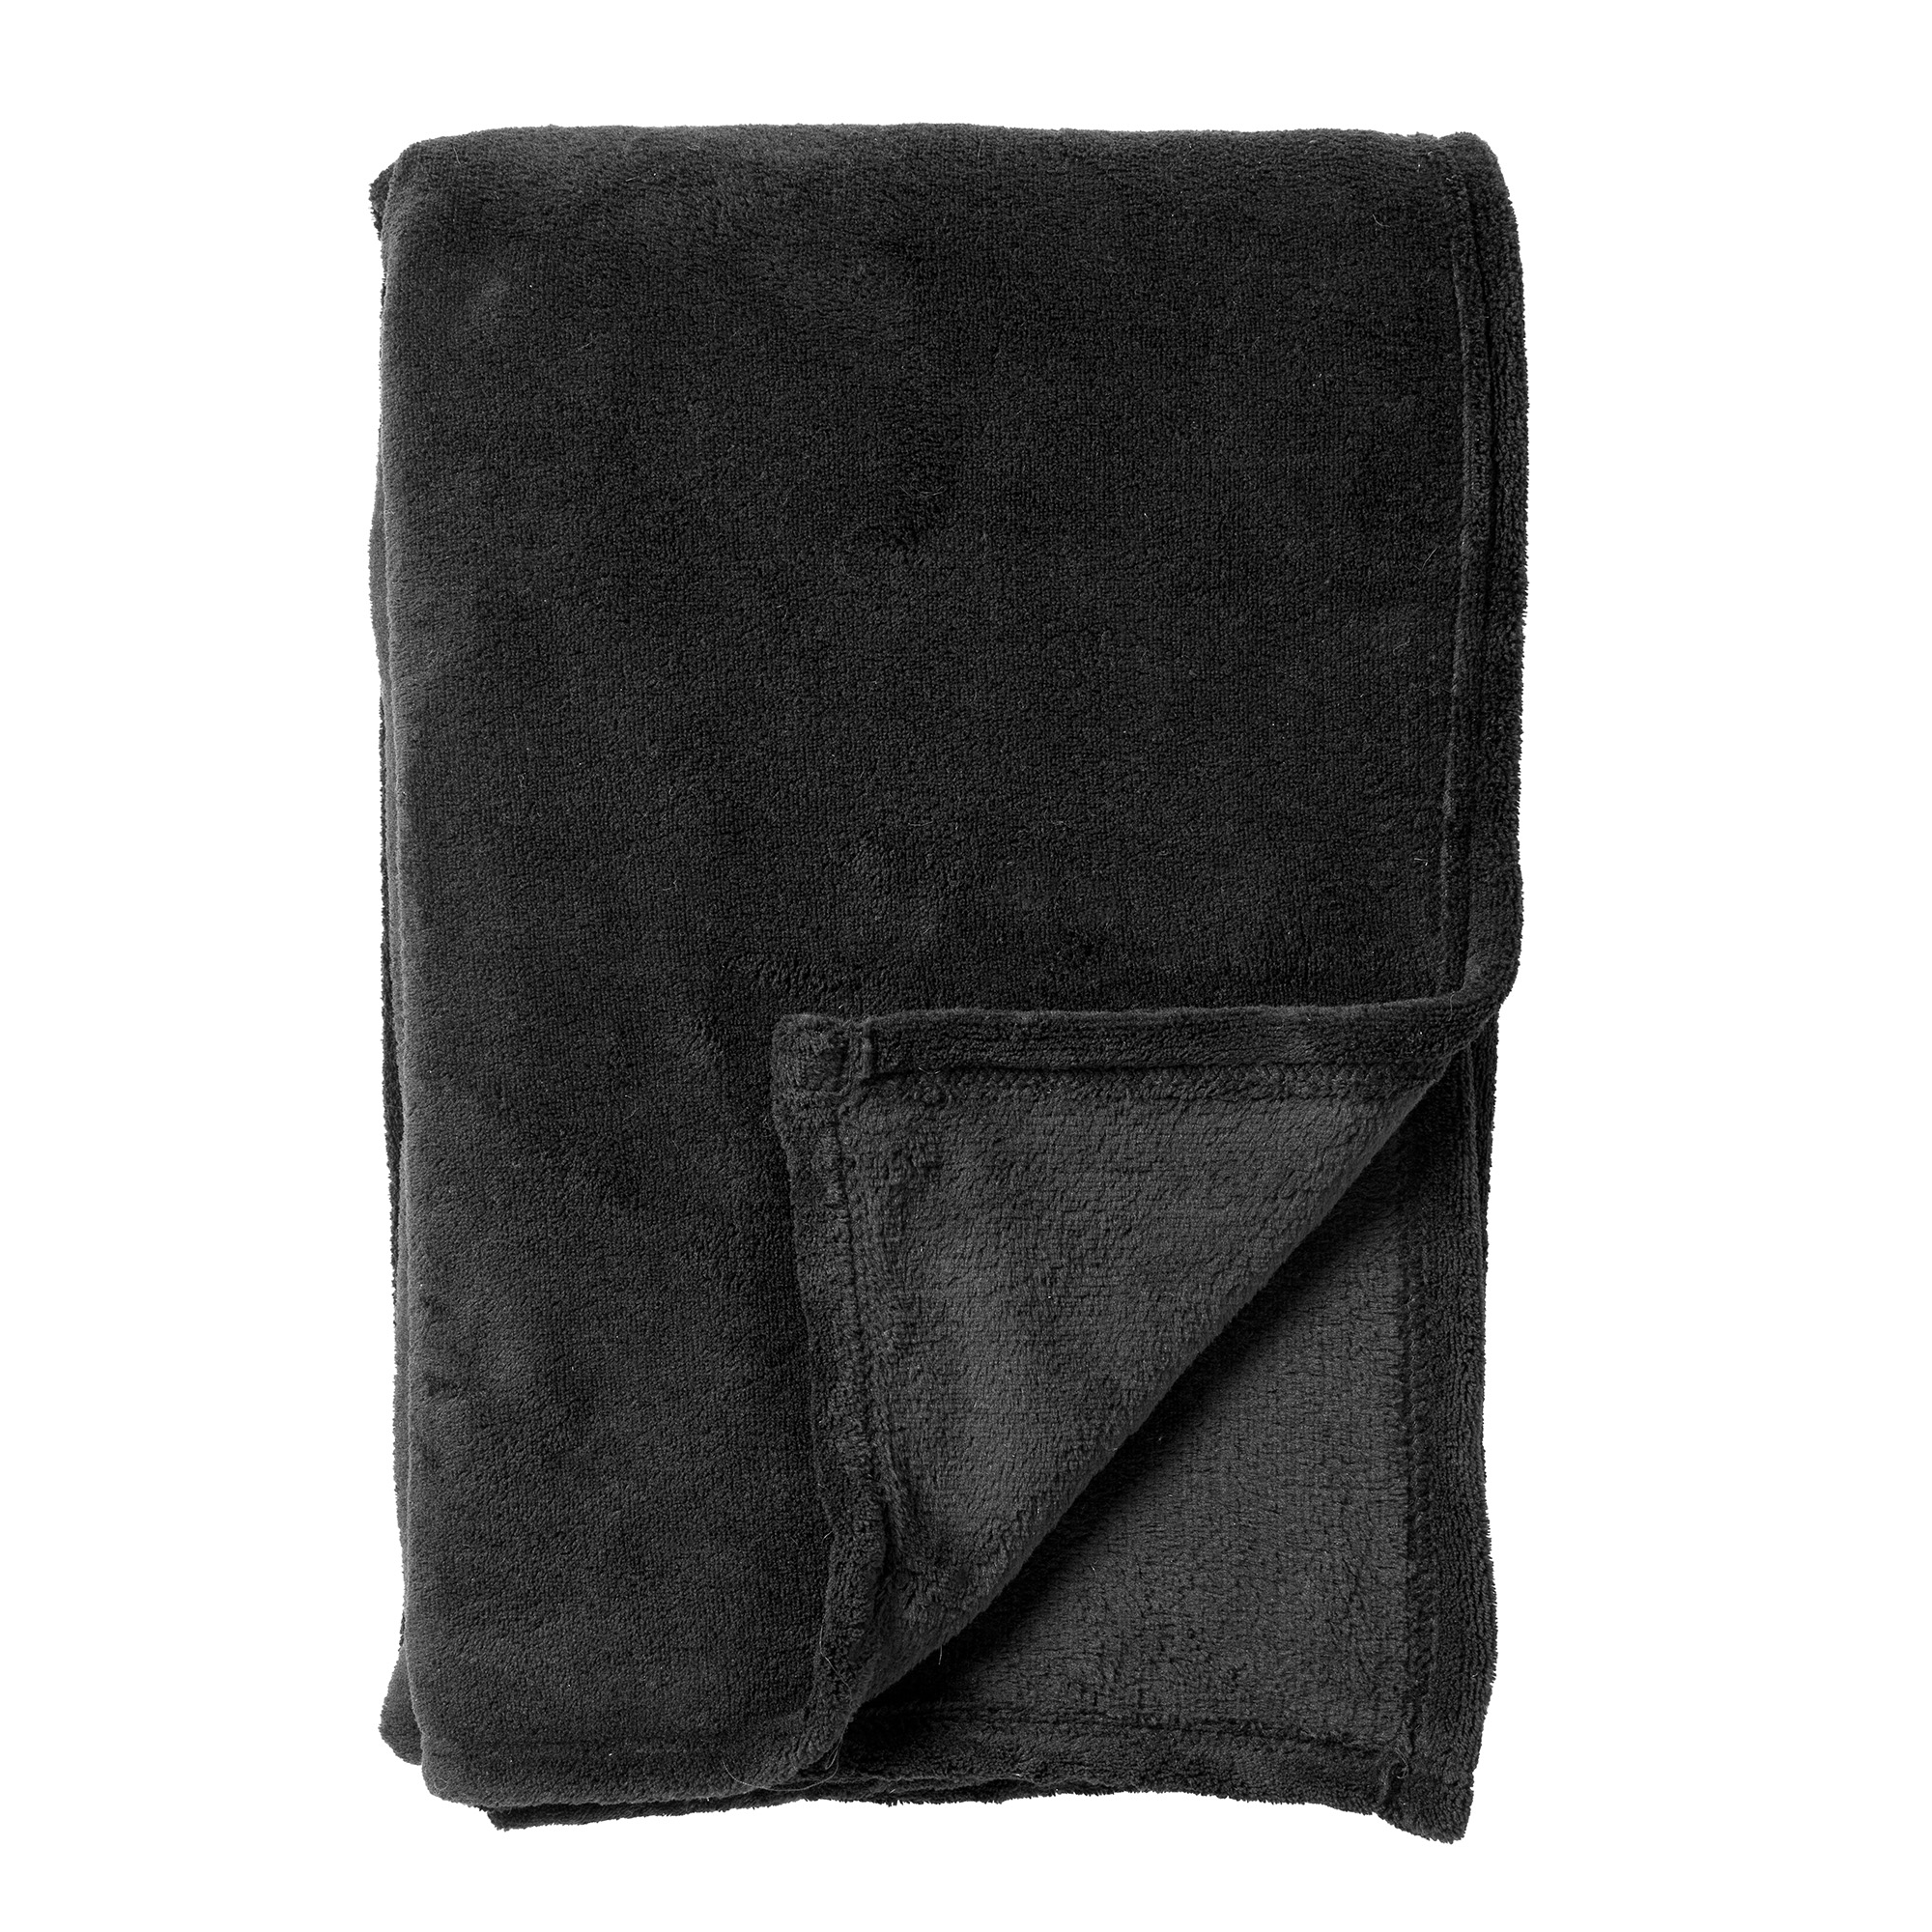 SIDNEY - Plaid 140x180 cm - Fleece deken van 100% gerecycled polyester – superzacht - Eco Line collectie - Raven - zwart